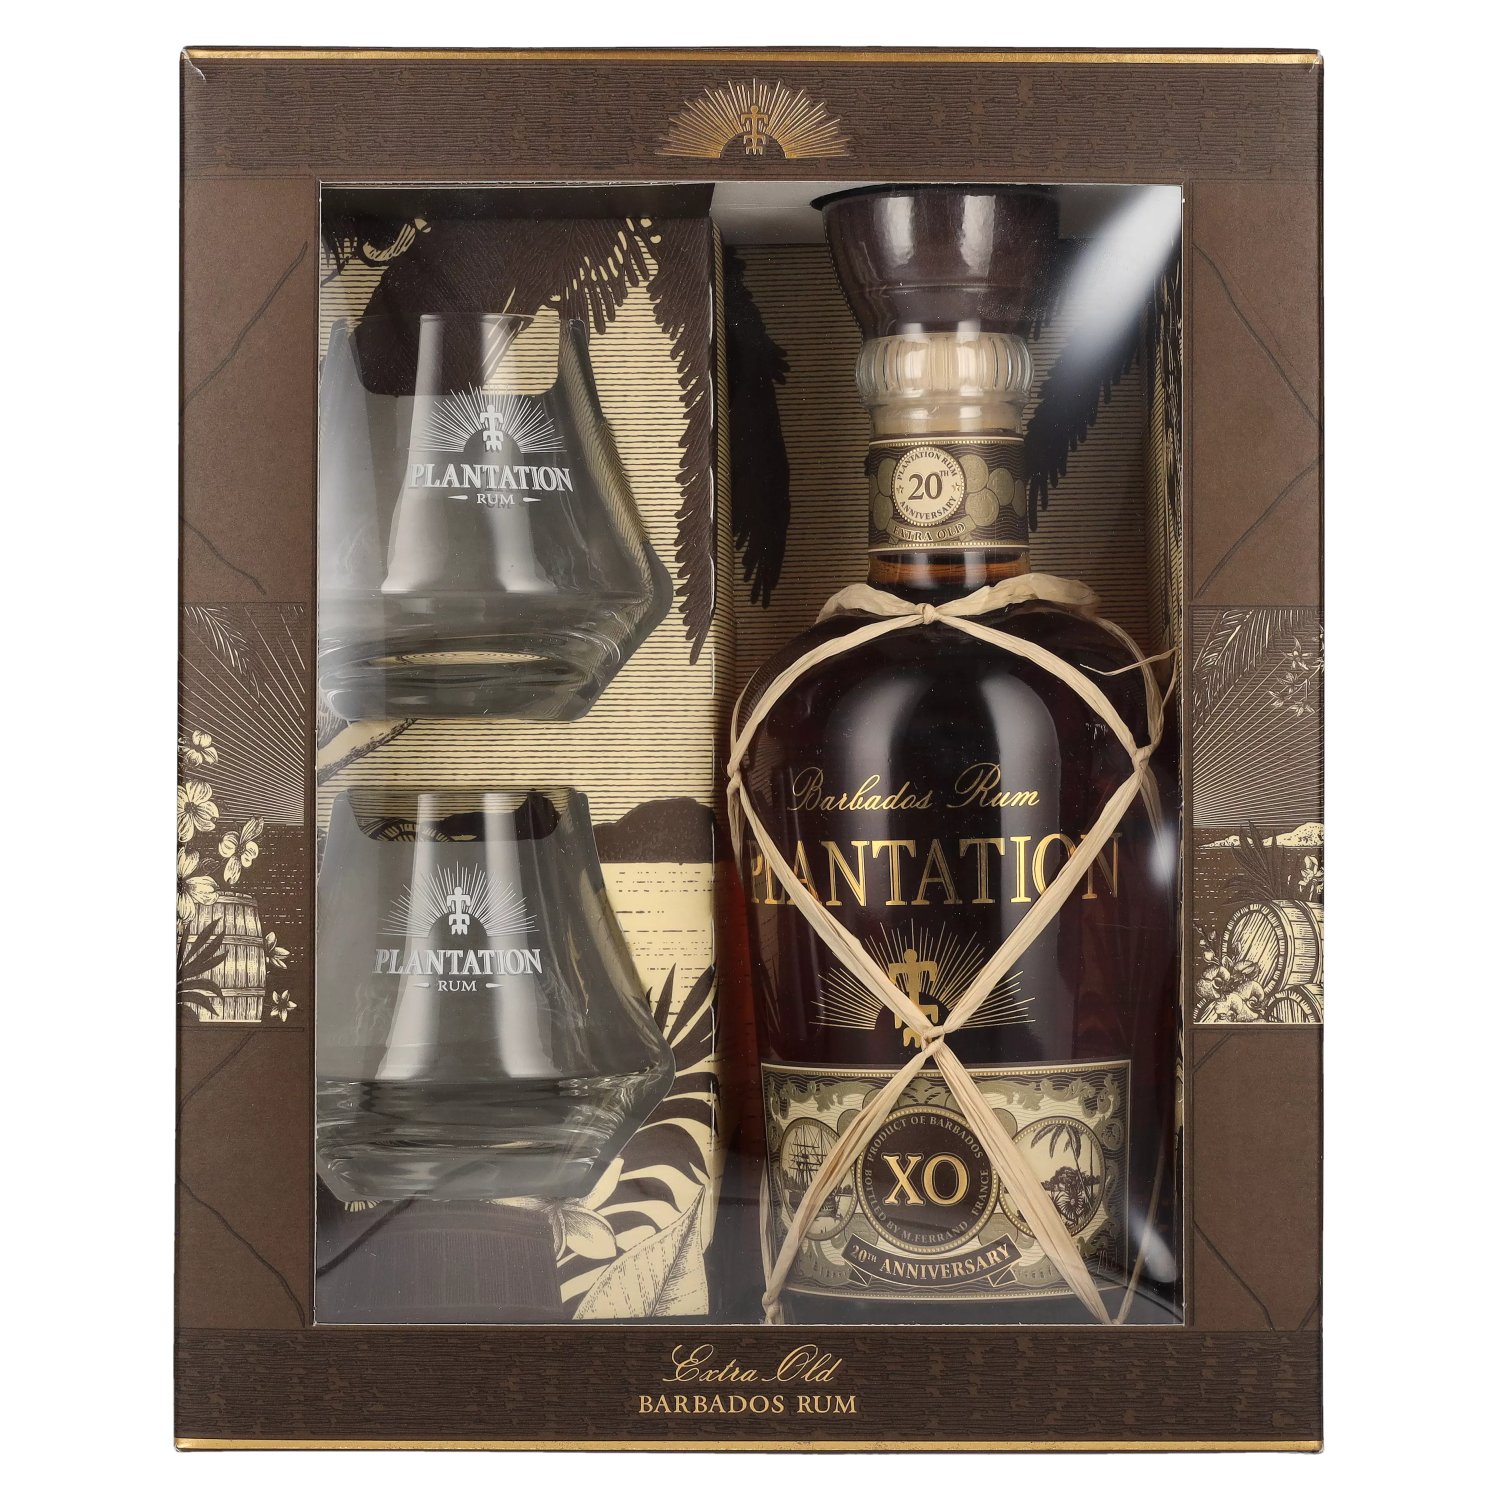 20th Rum BARBADOS 2 40% 0,7l Plantation in Anniversary Vol. mit Geschenkbox Gläsern XO